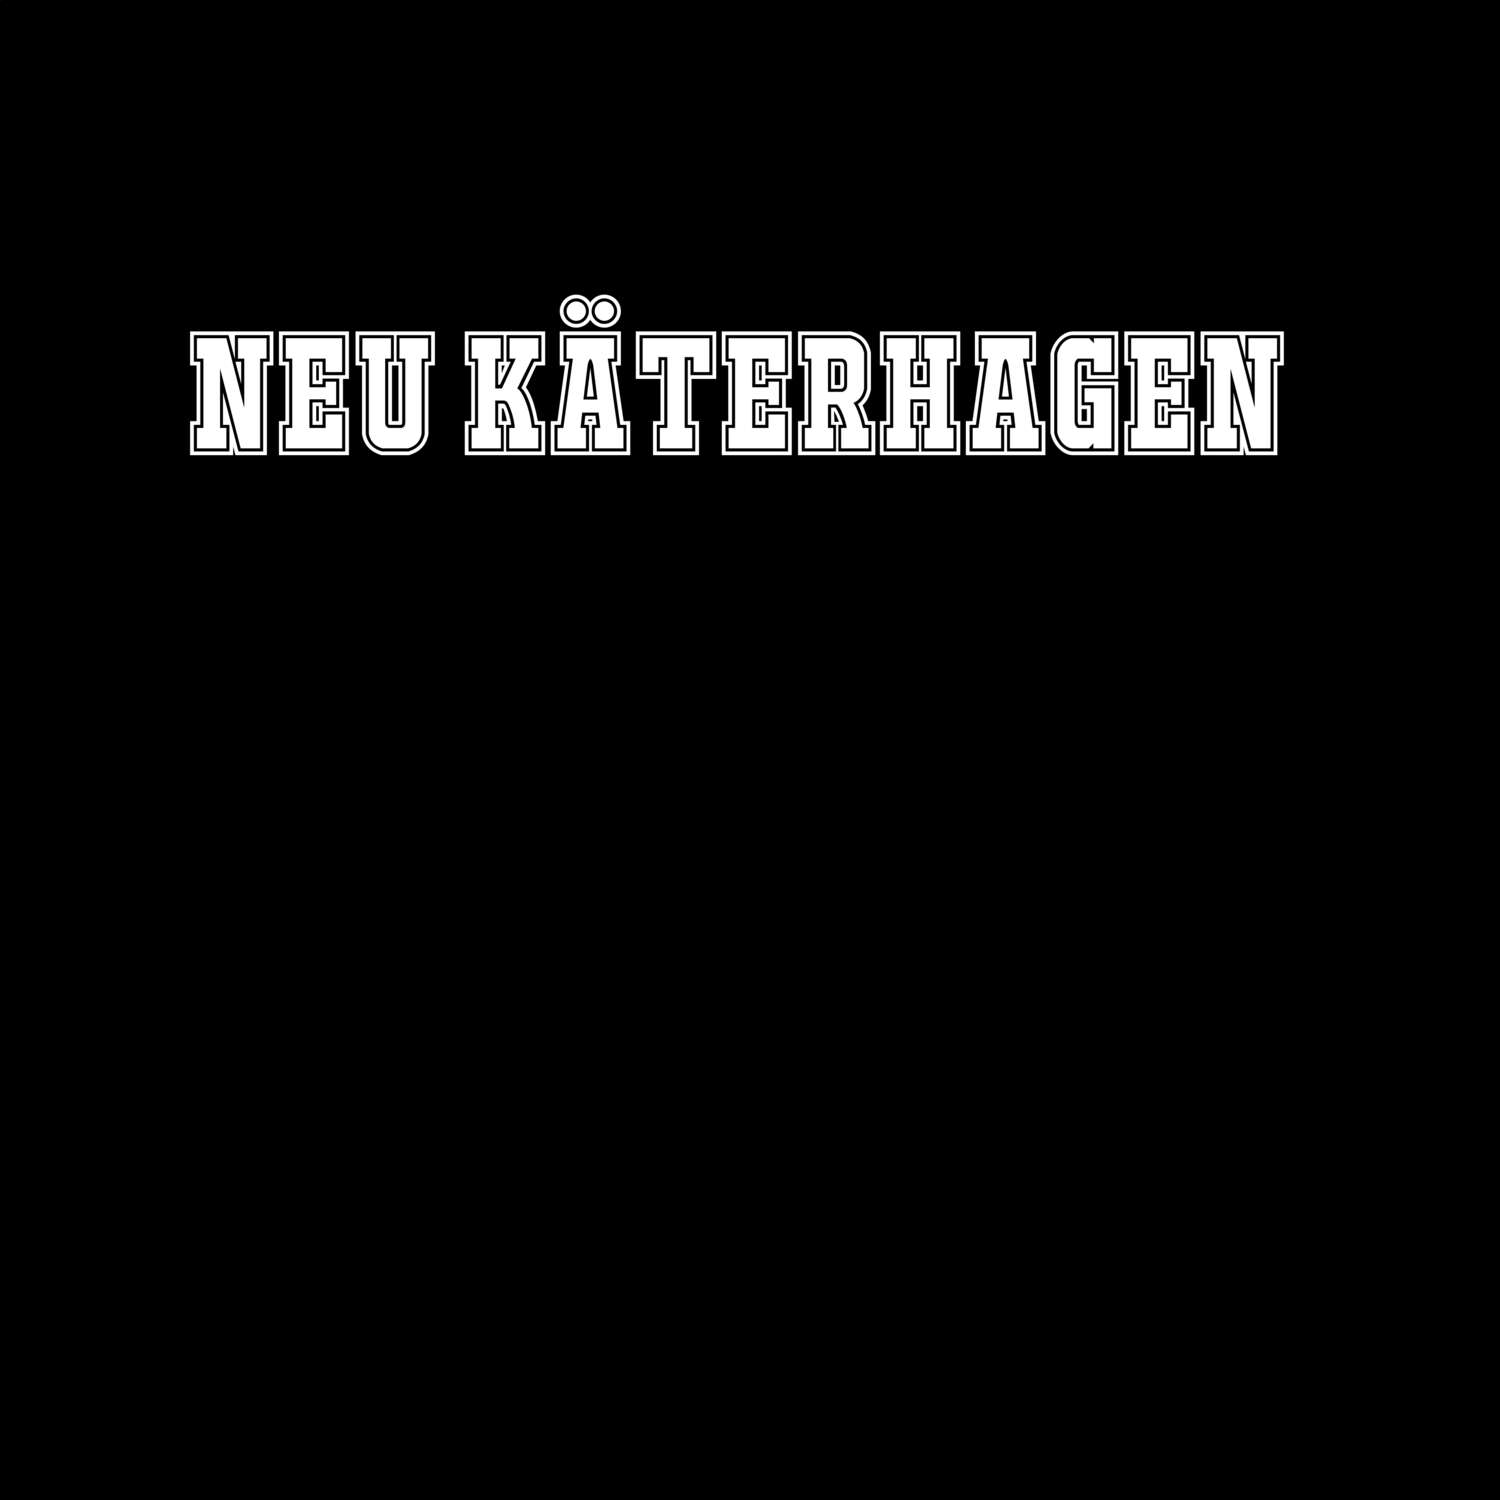 Neu Käterhagen T-Shirt »Classic«